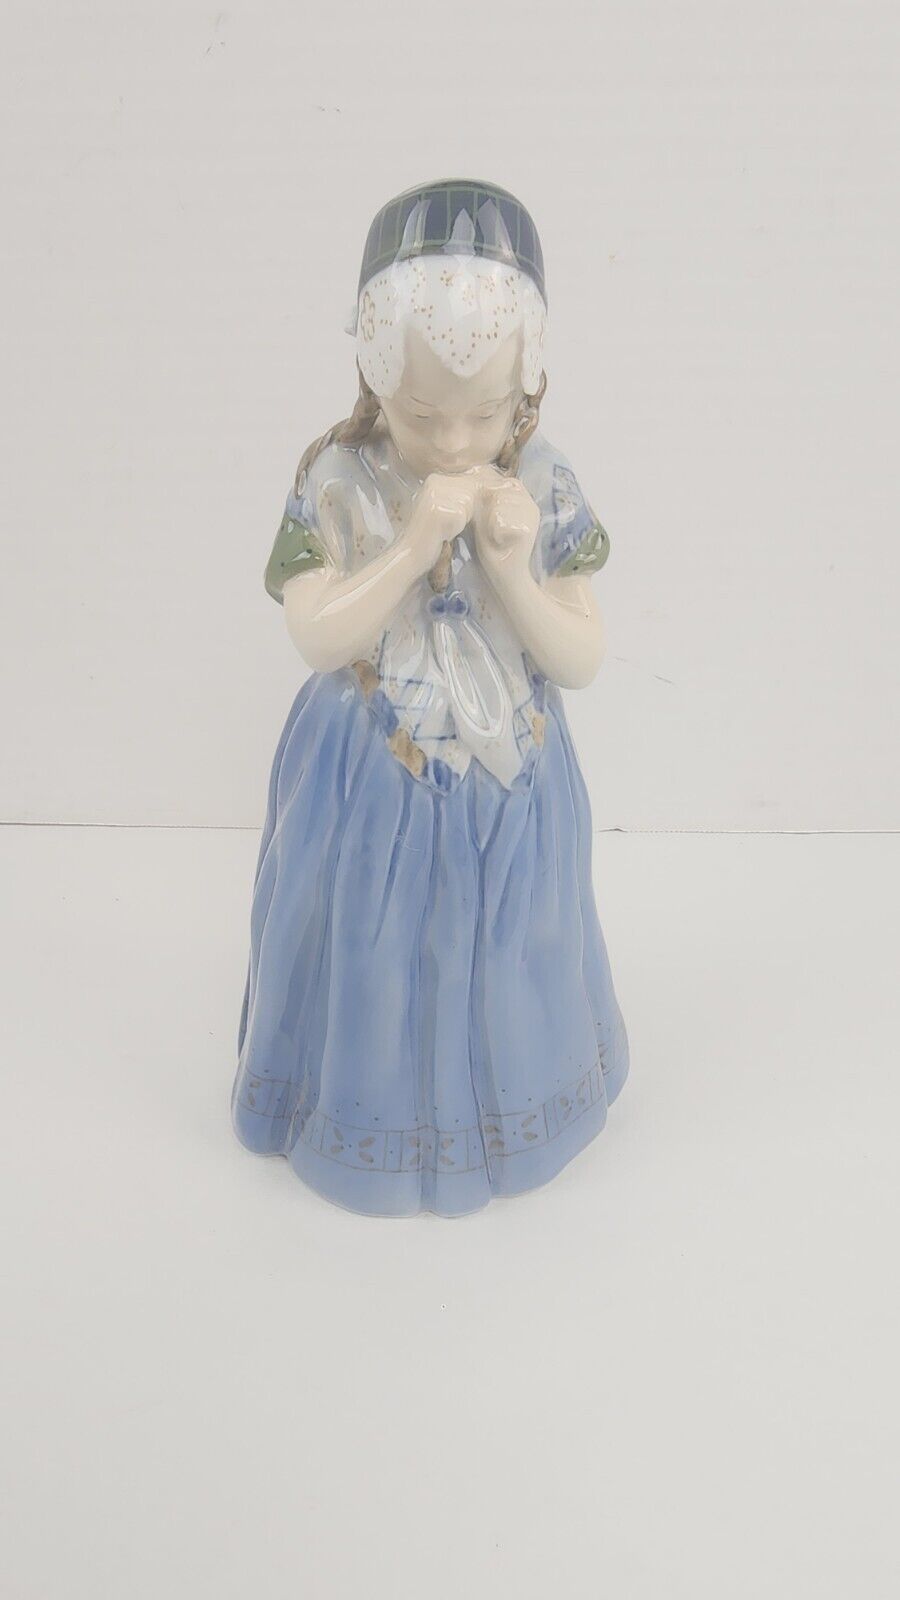 1969 Vintage Denmark Royal Copenhagen Porcelain Figurine Girl from Bornholm 1323